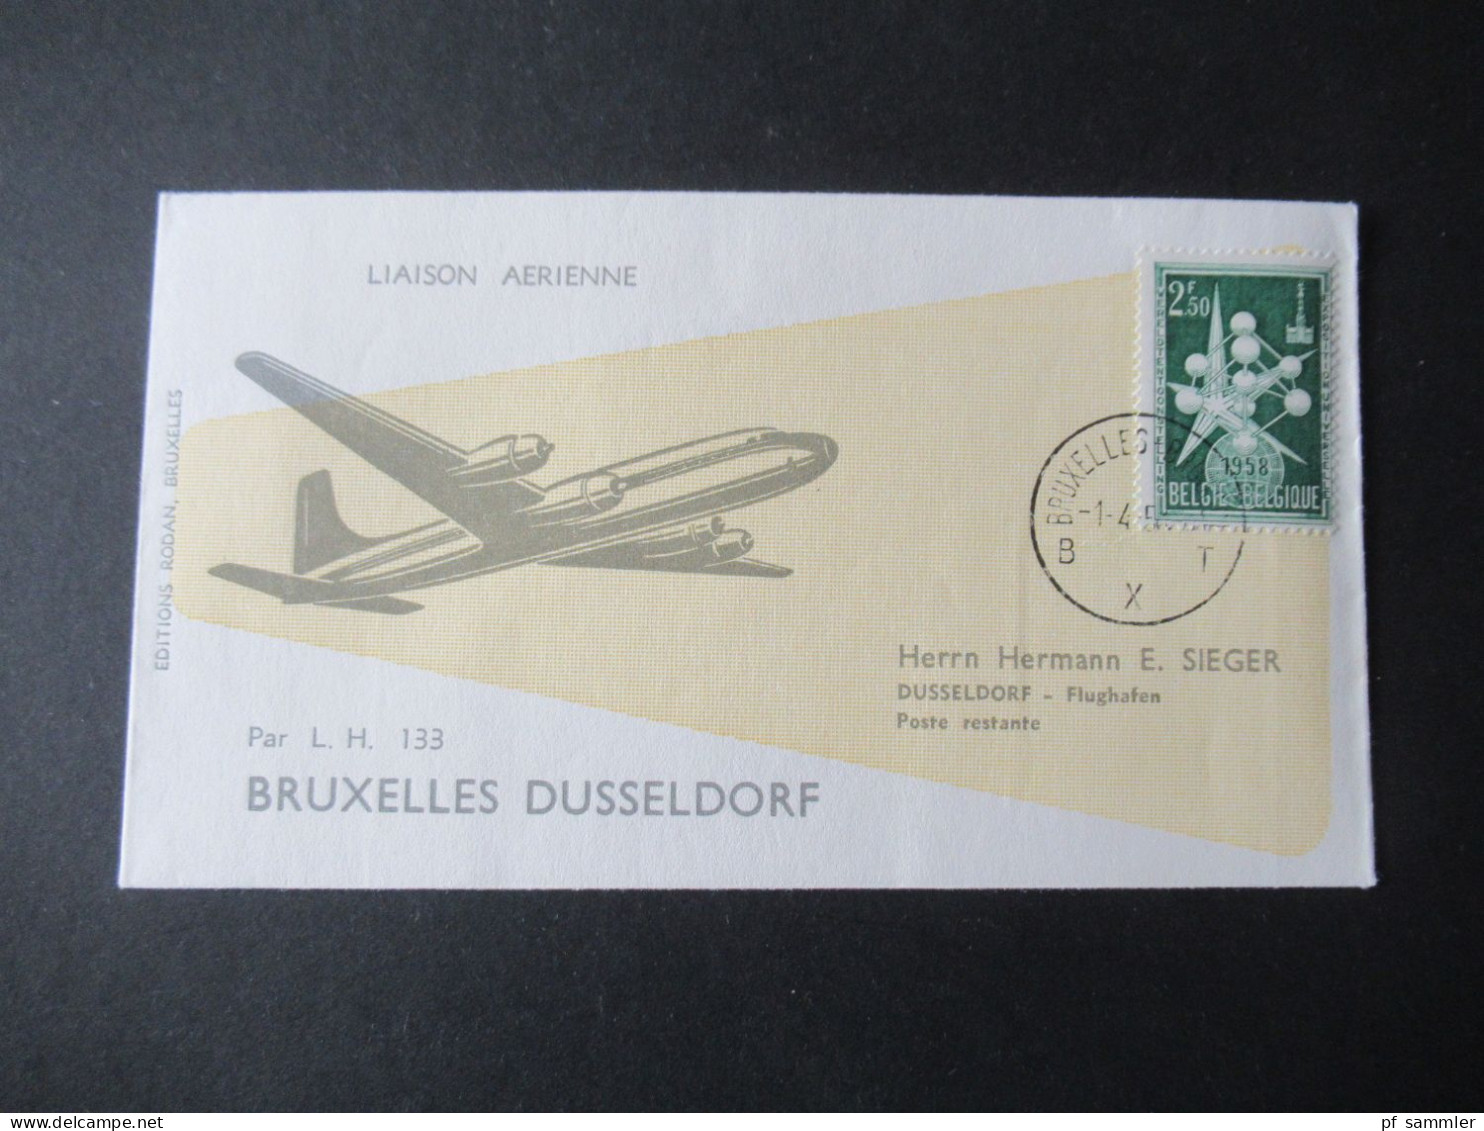 Belgien 1958 Erstflug / First Flight Deutsche Lufthansa LH 133 Bruxelles - Düsseldorf / Hermann E. Sieger Beleg - Covers & Documents